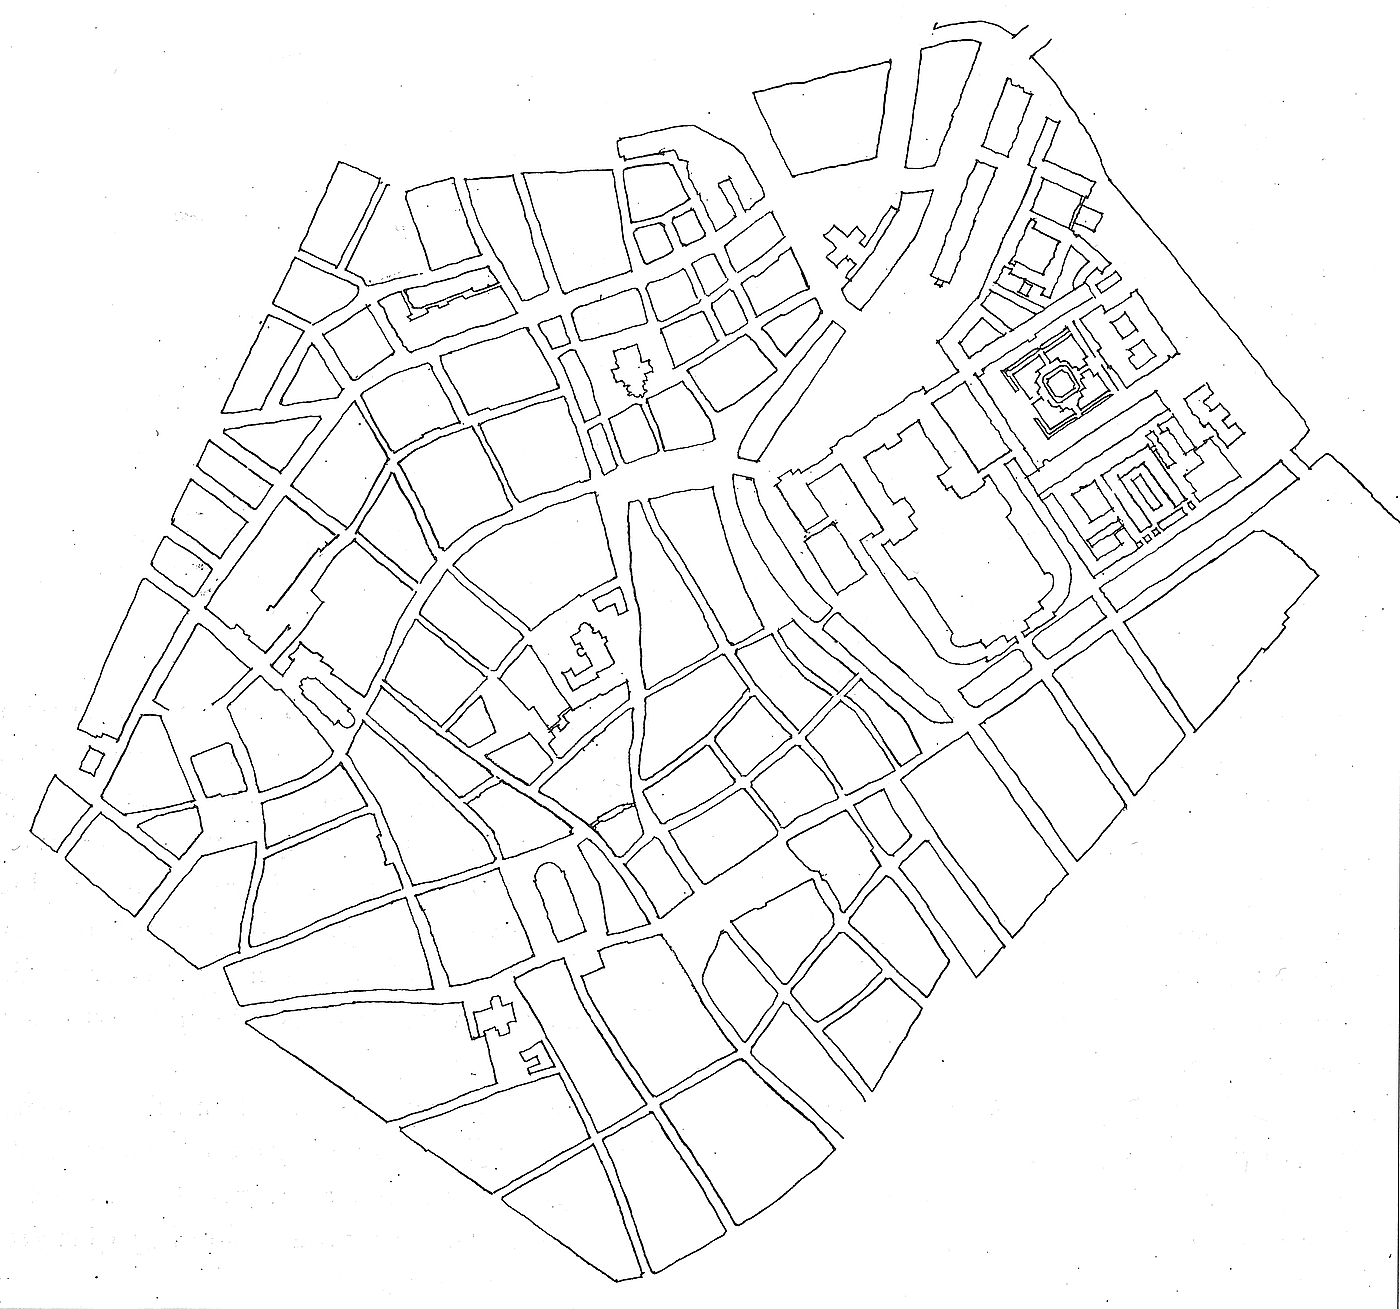 Forslag til Nybros placering i forhold til Indre Bys gadenet